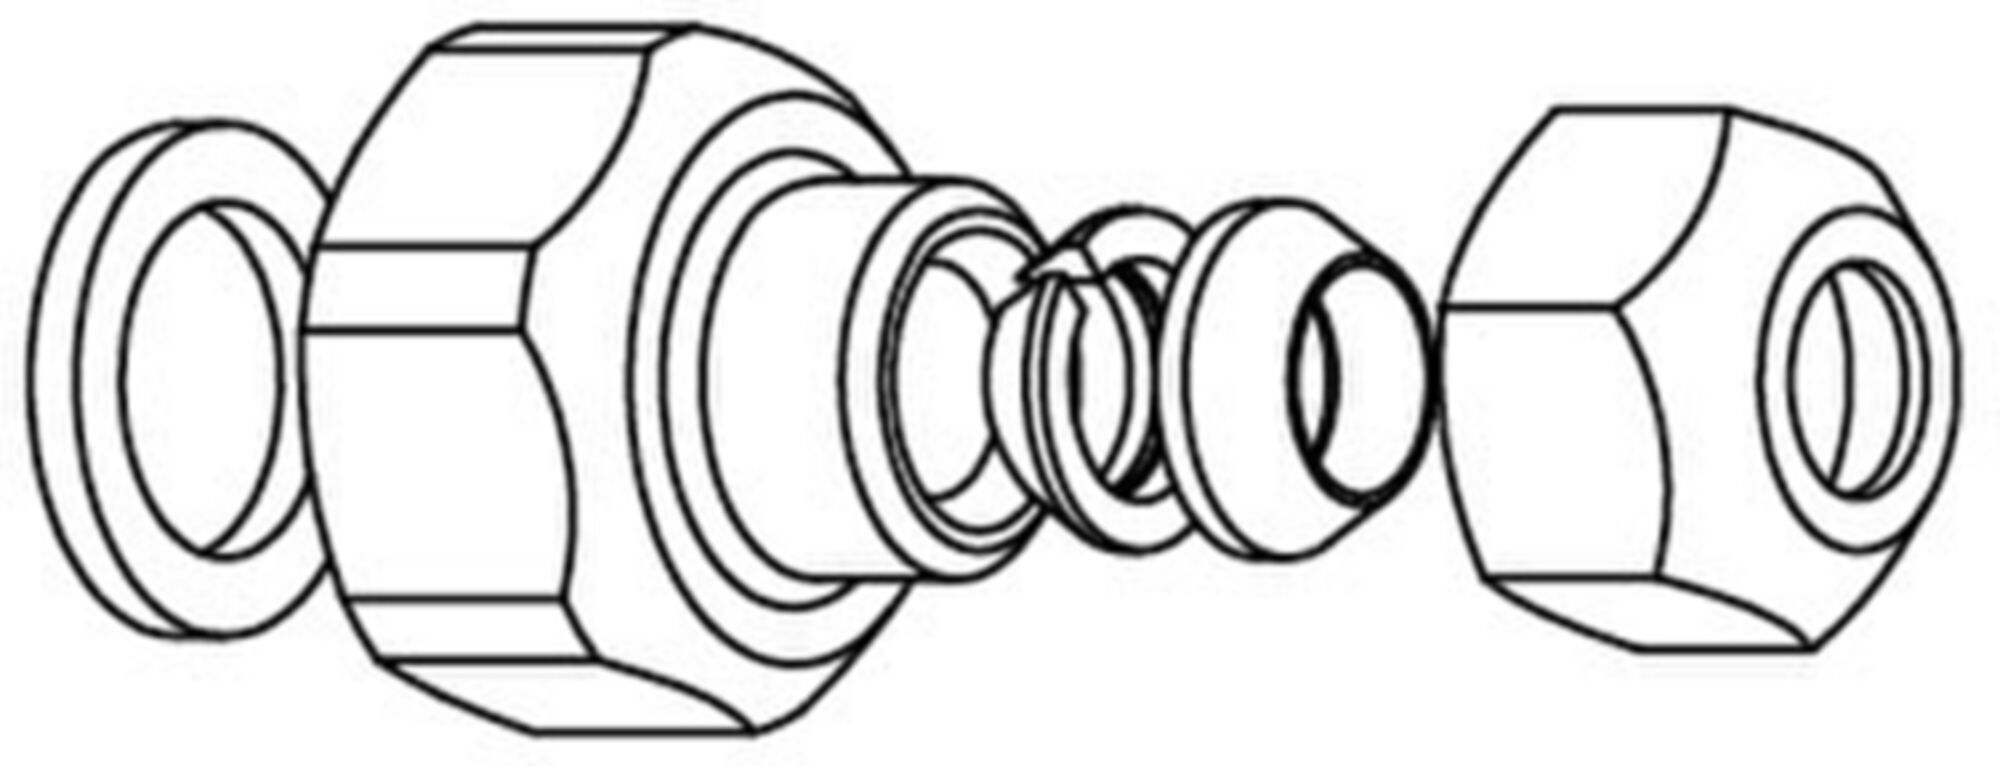 銅管接続式